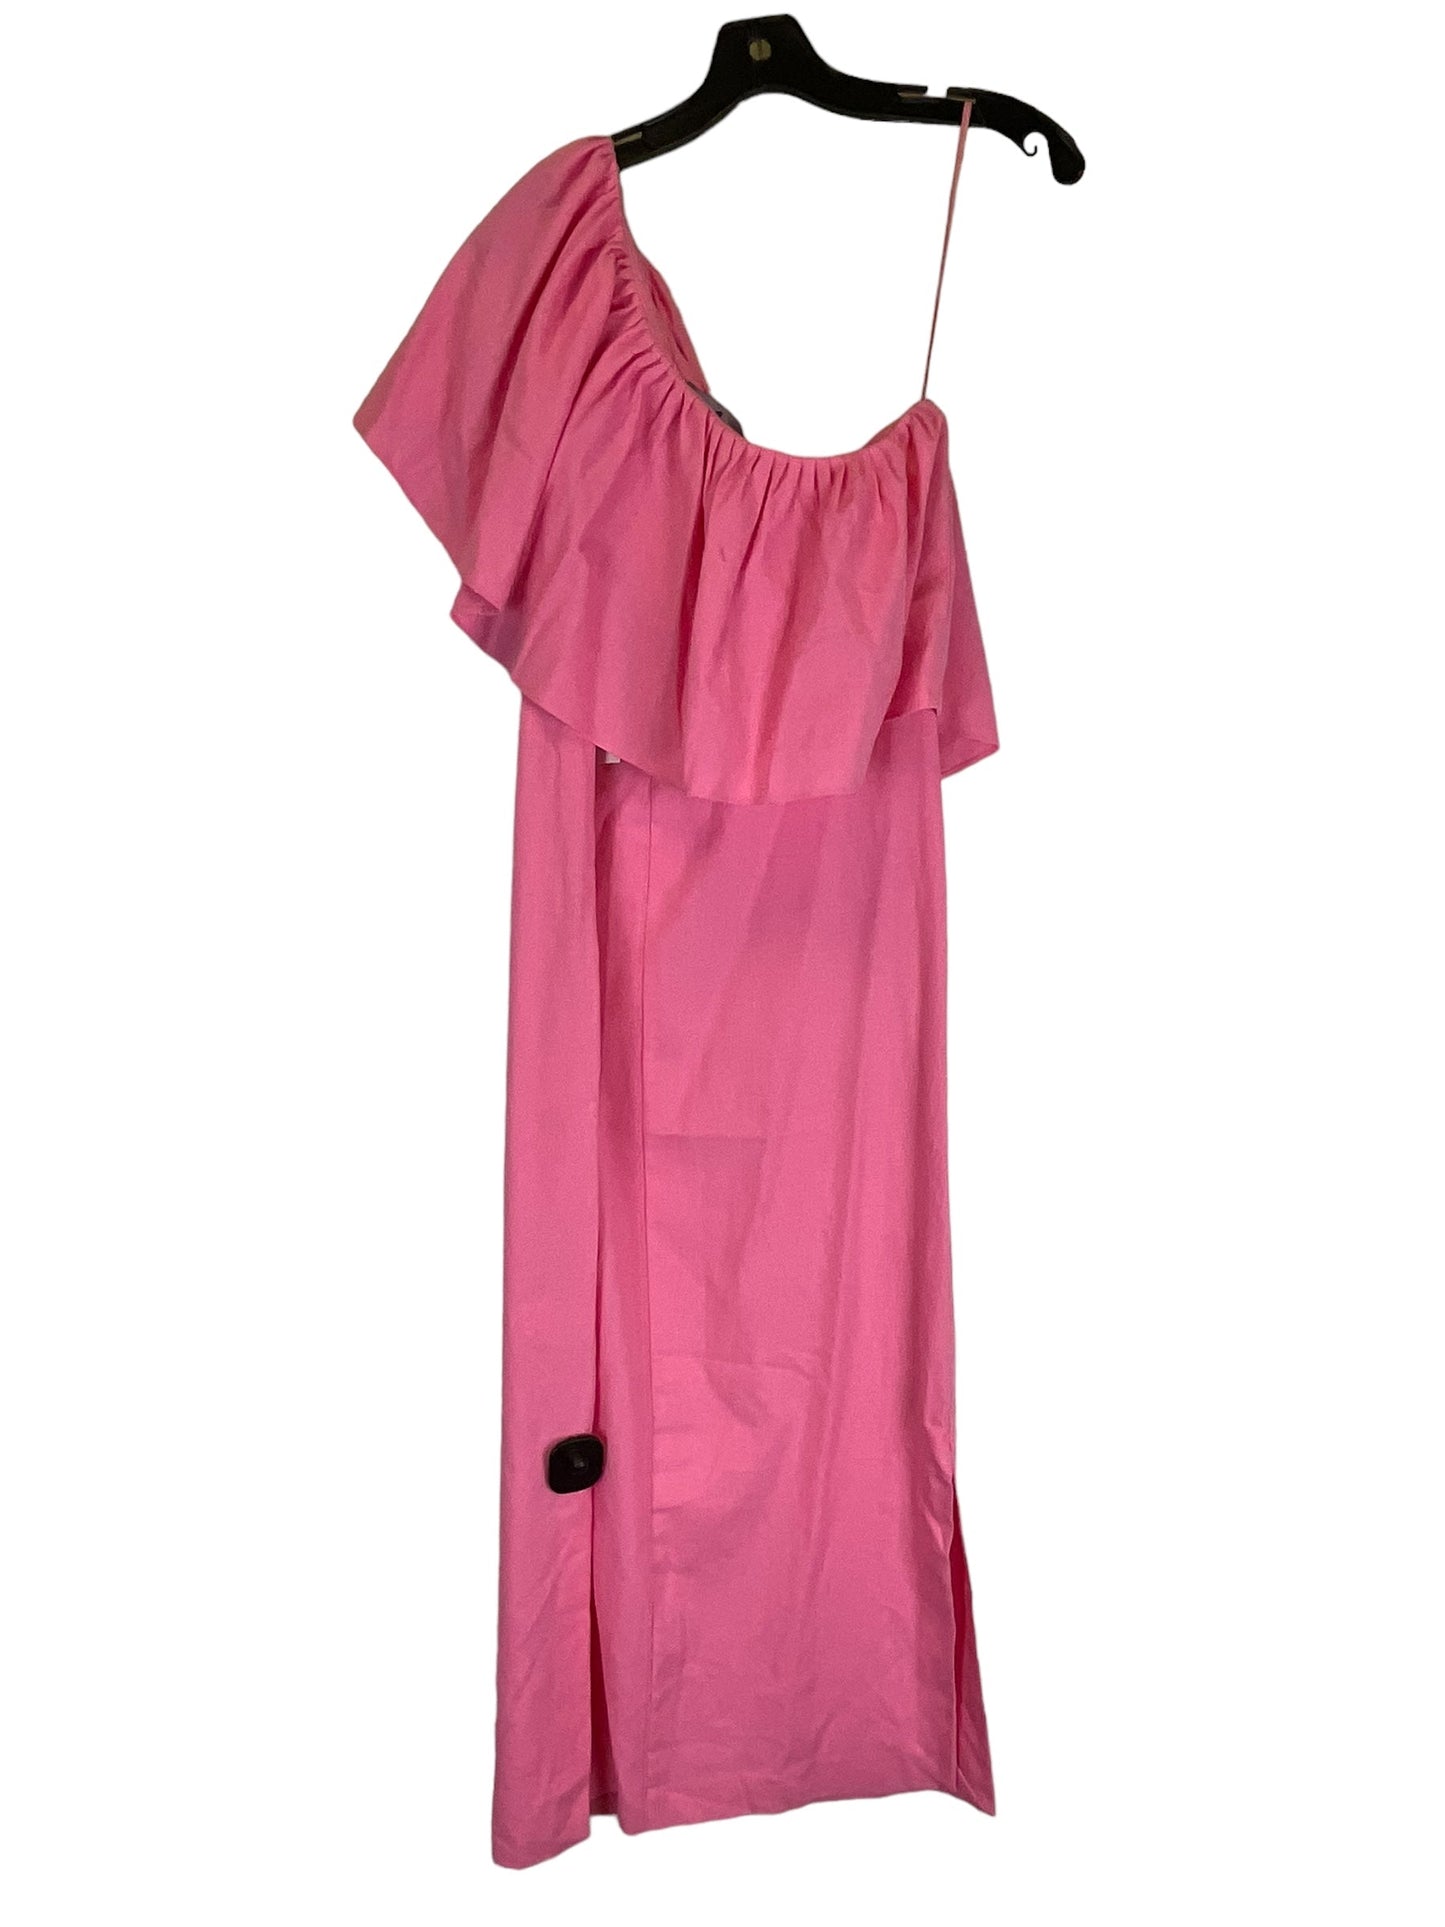 Pink Dress Designer Clothes Mentor, Size S